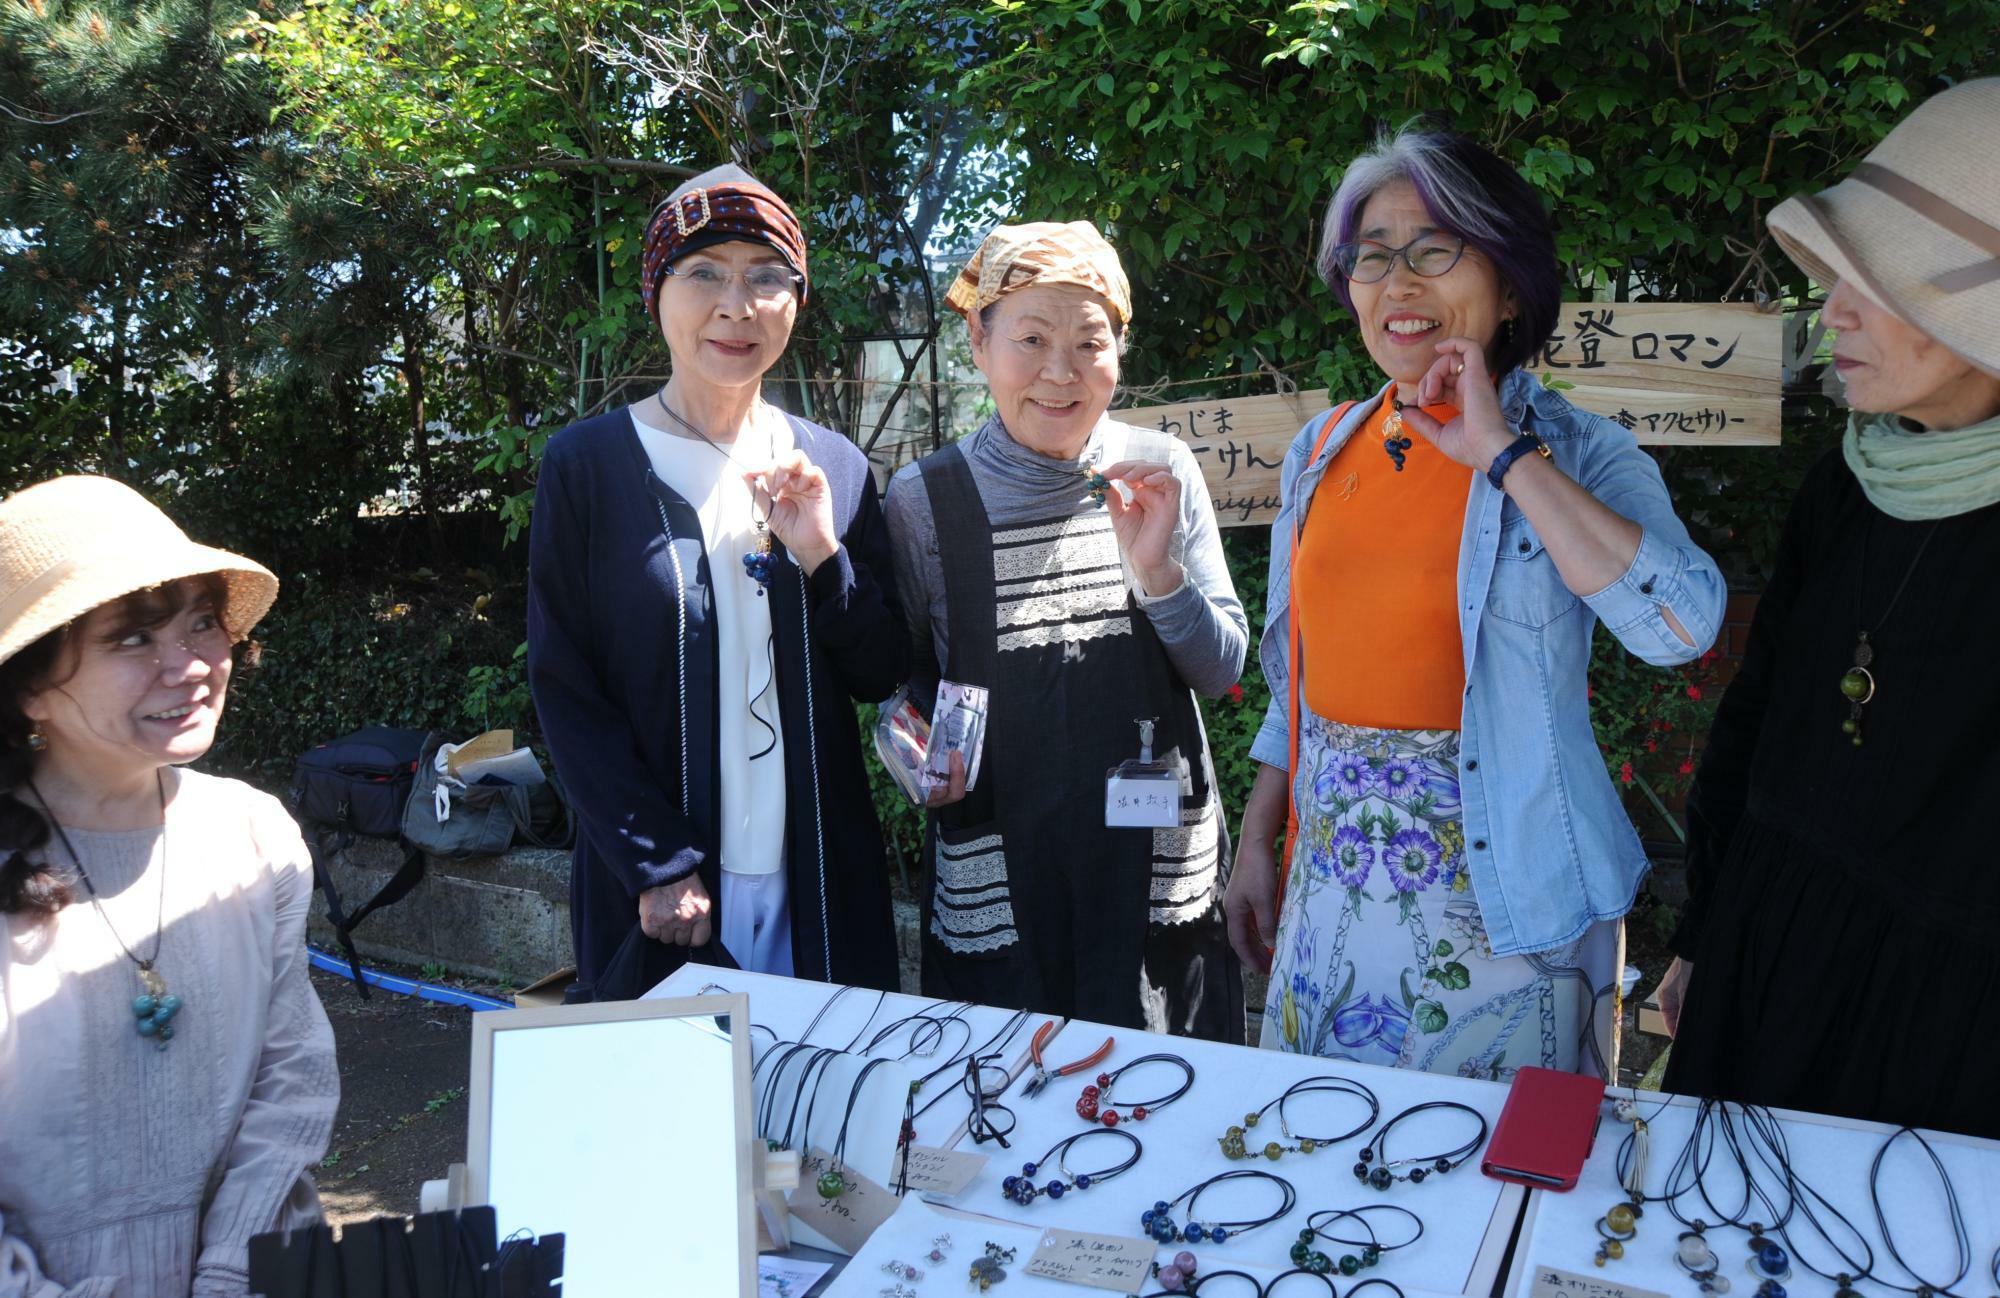 ブドウのペンダントを購入した客とともに。高木さん（左端）は、塩職人が輪島沖の海水から低温抽出した良質な苦汁を使った「わじま海石けん」も販売した